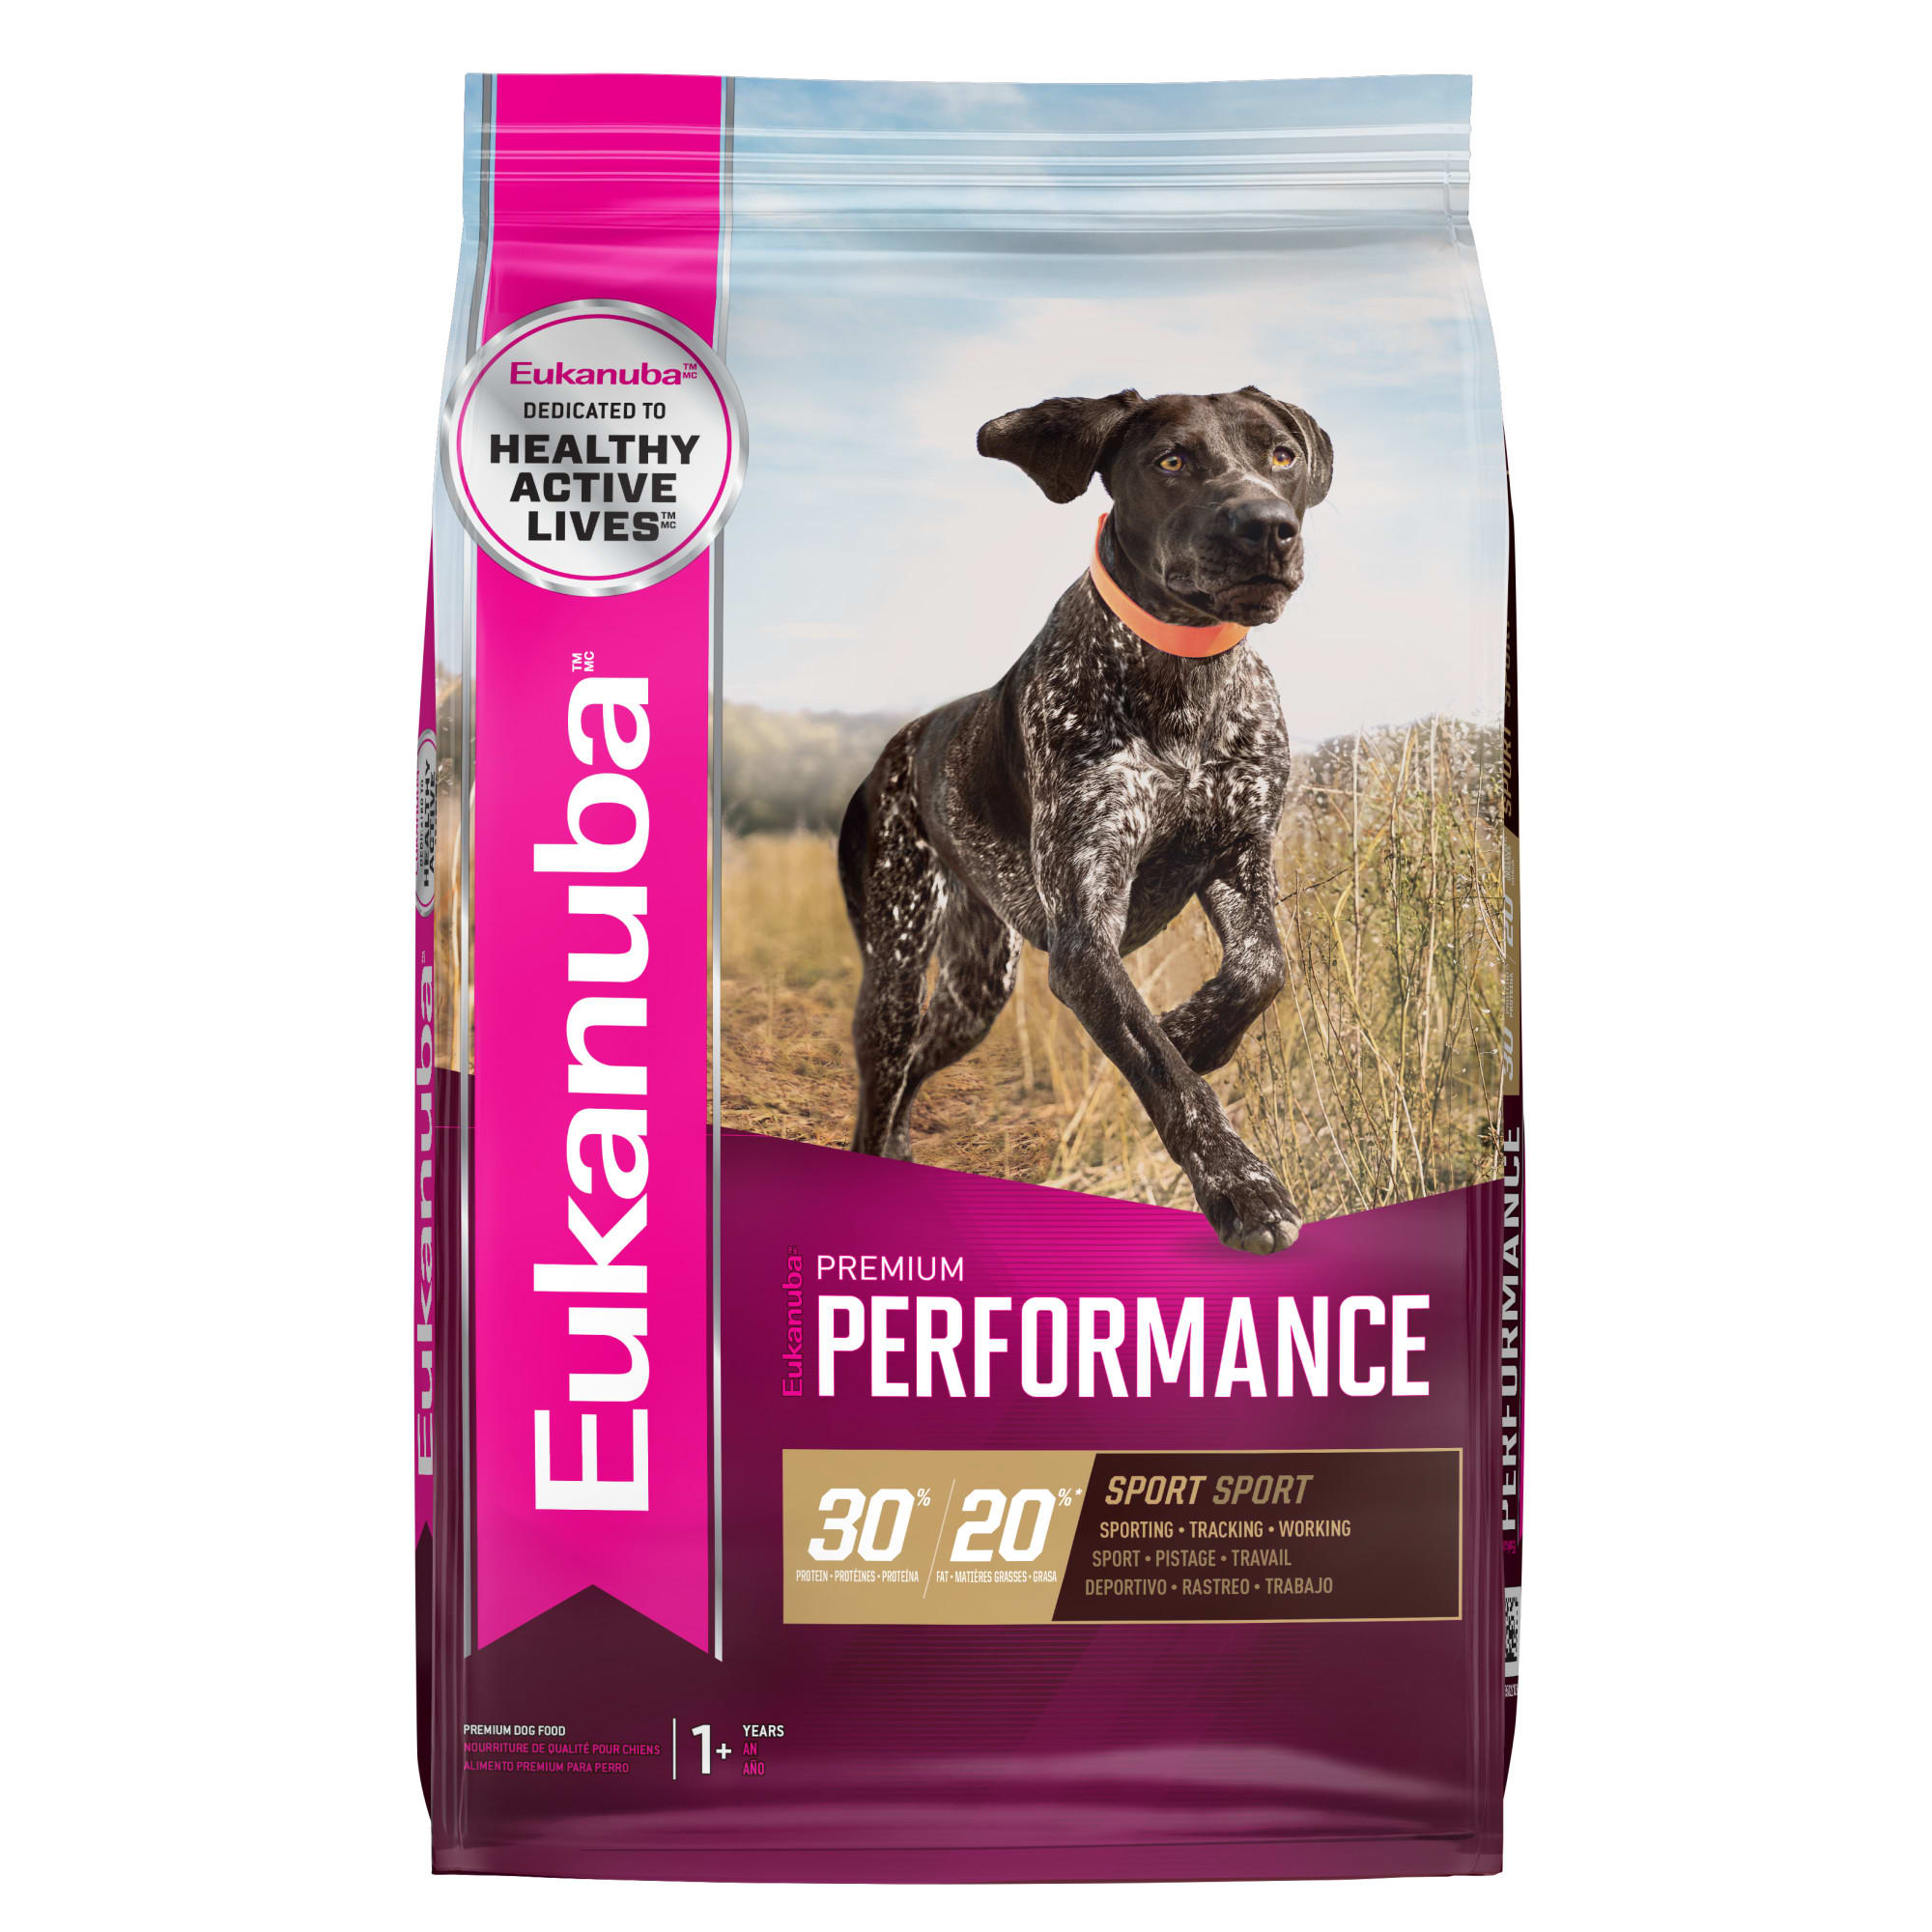 Zoek machine optimalisatie Verlenen Voorstellen Eukanuba Premium Performance 30/20 SPORT Adult Dry Dog Food, 28 lbs. | Petco